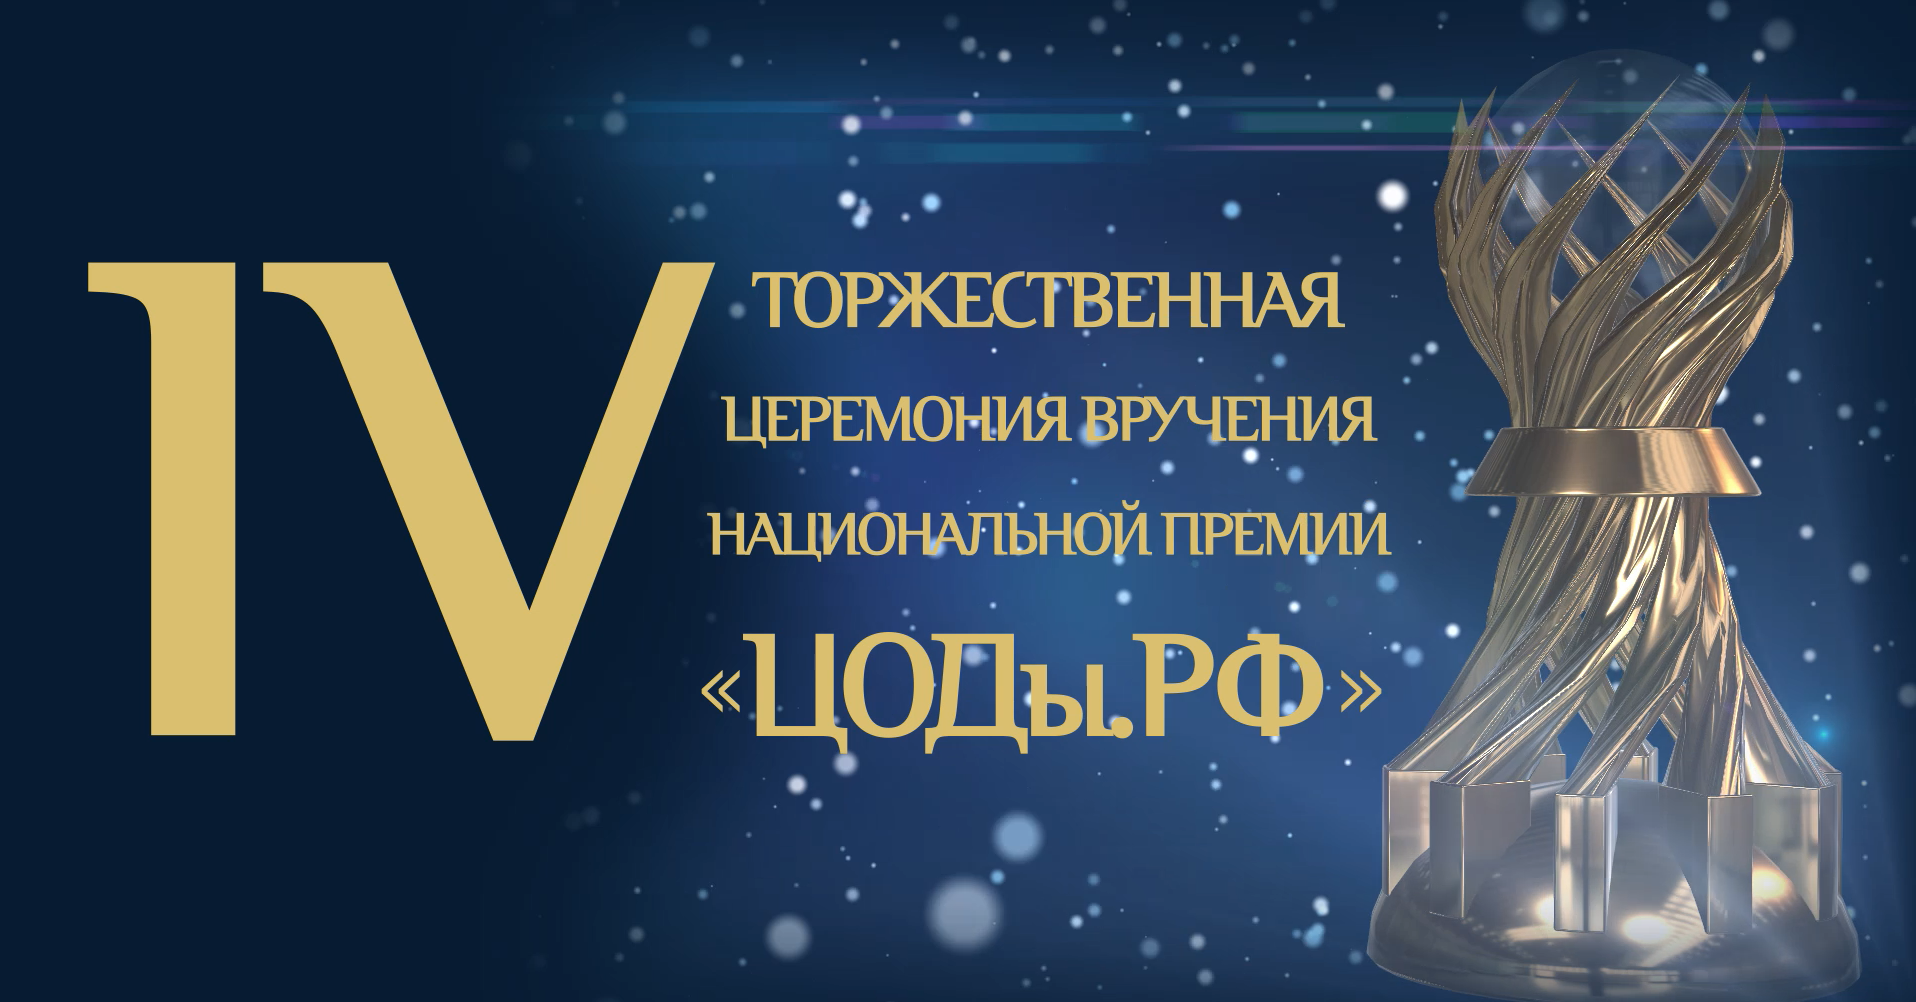 IV церемония вручения Национальной премии «ЦОДы.РФ»